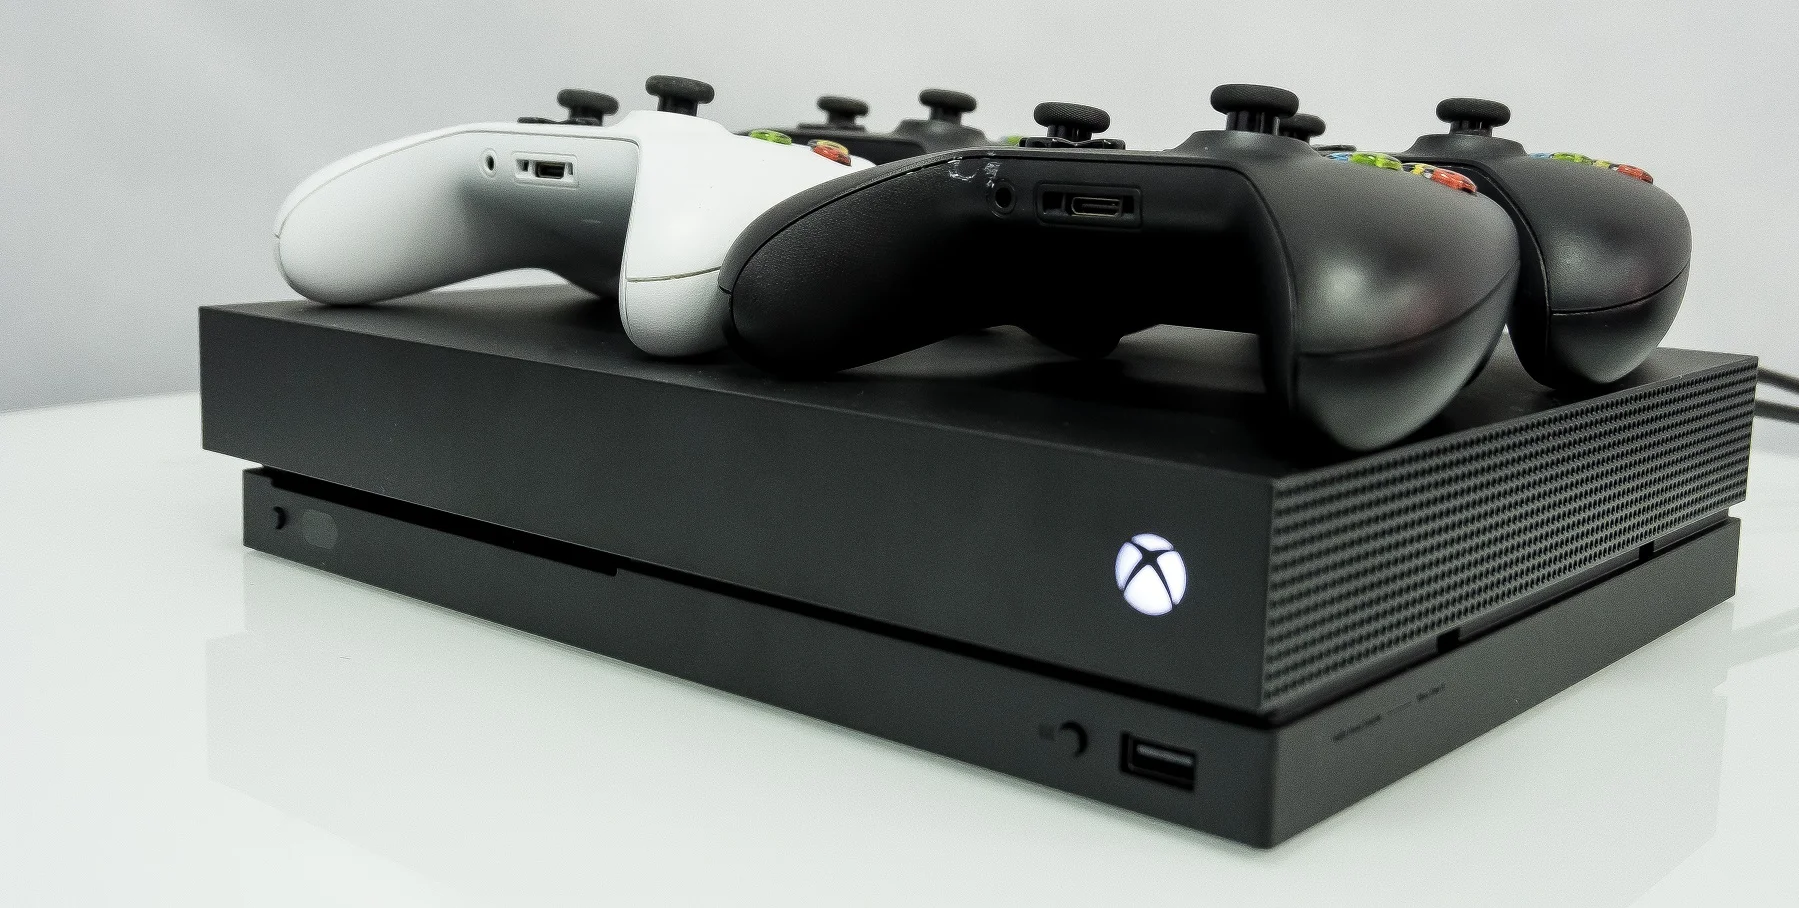 Обзор Xbox One X: Microsoft сделала очень крутую консоль. Надо брать? [+Видео] - фото 9